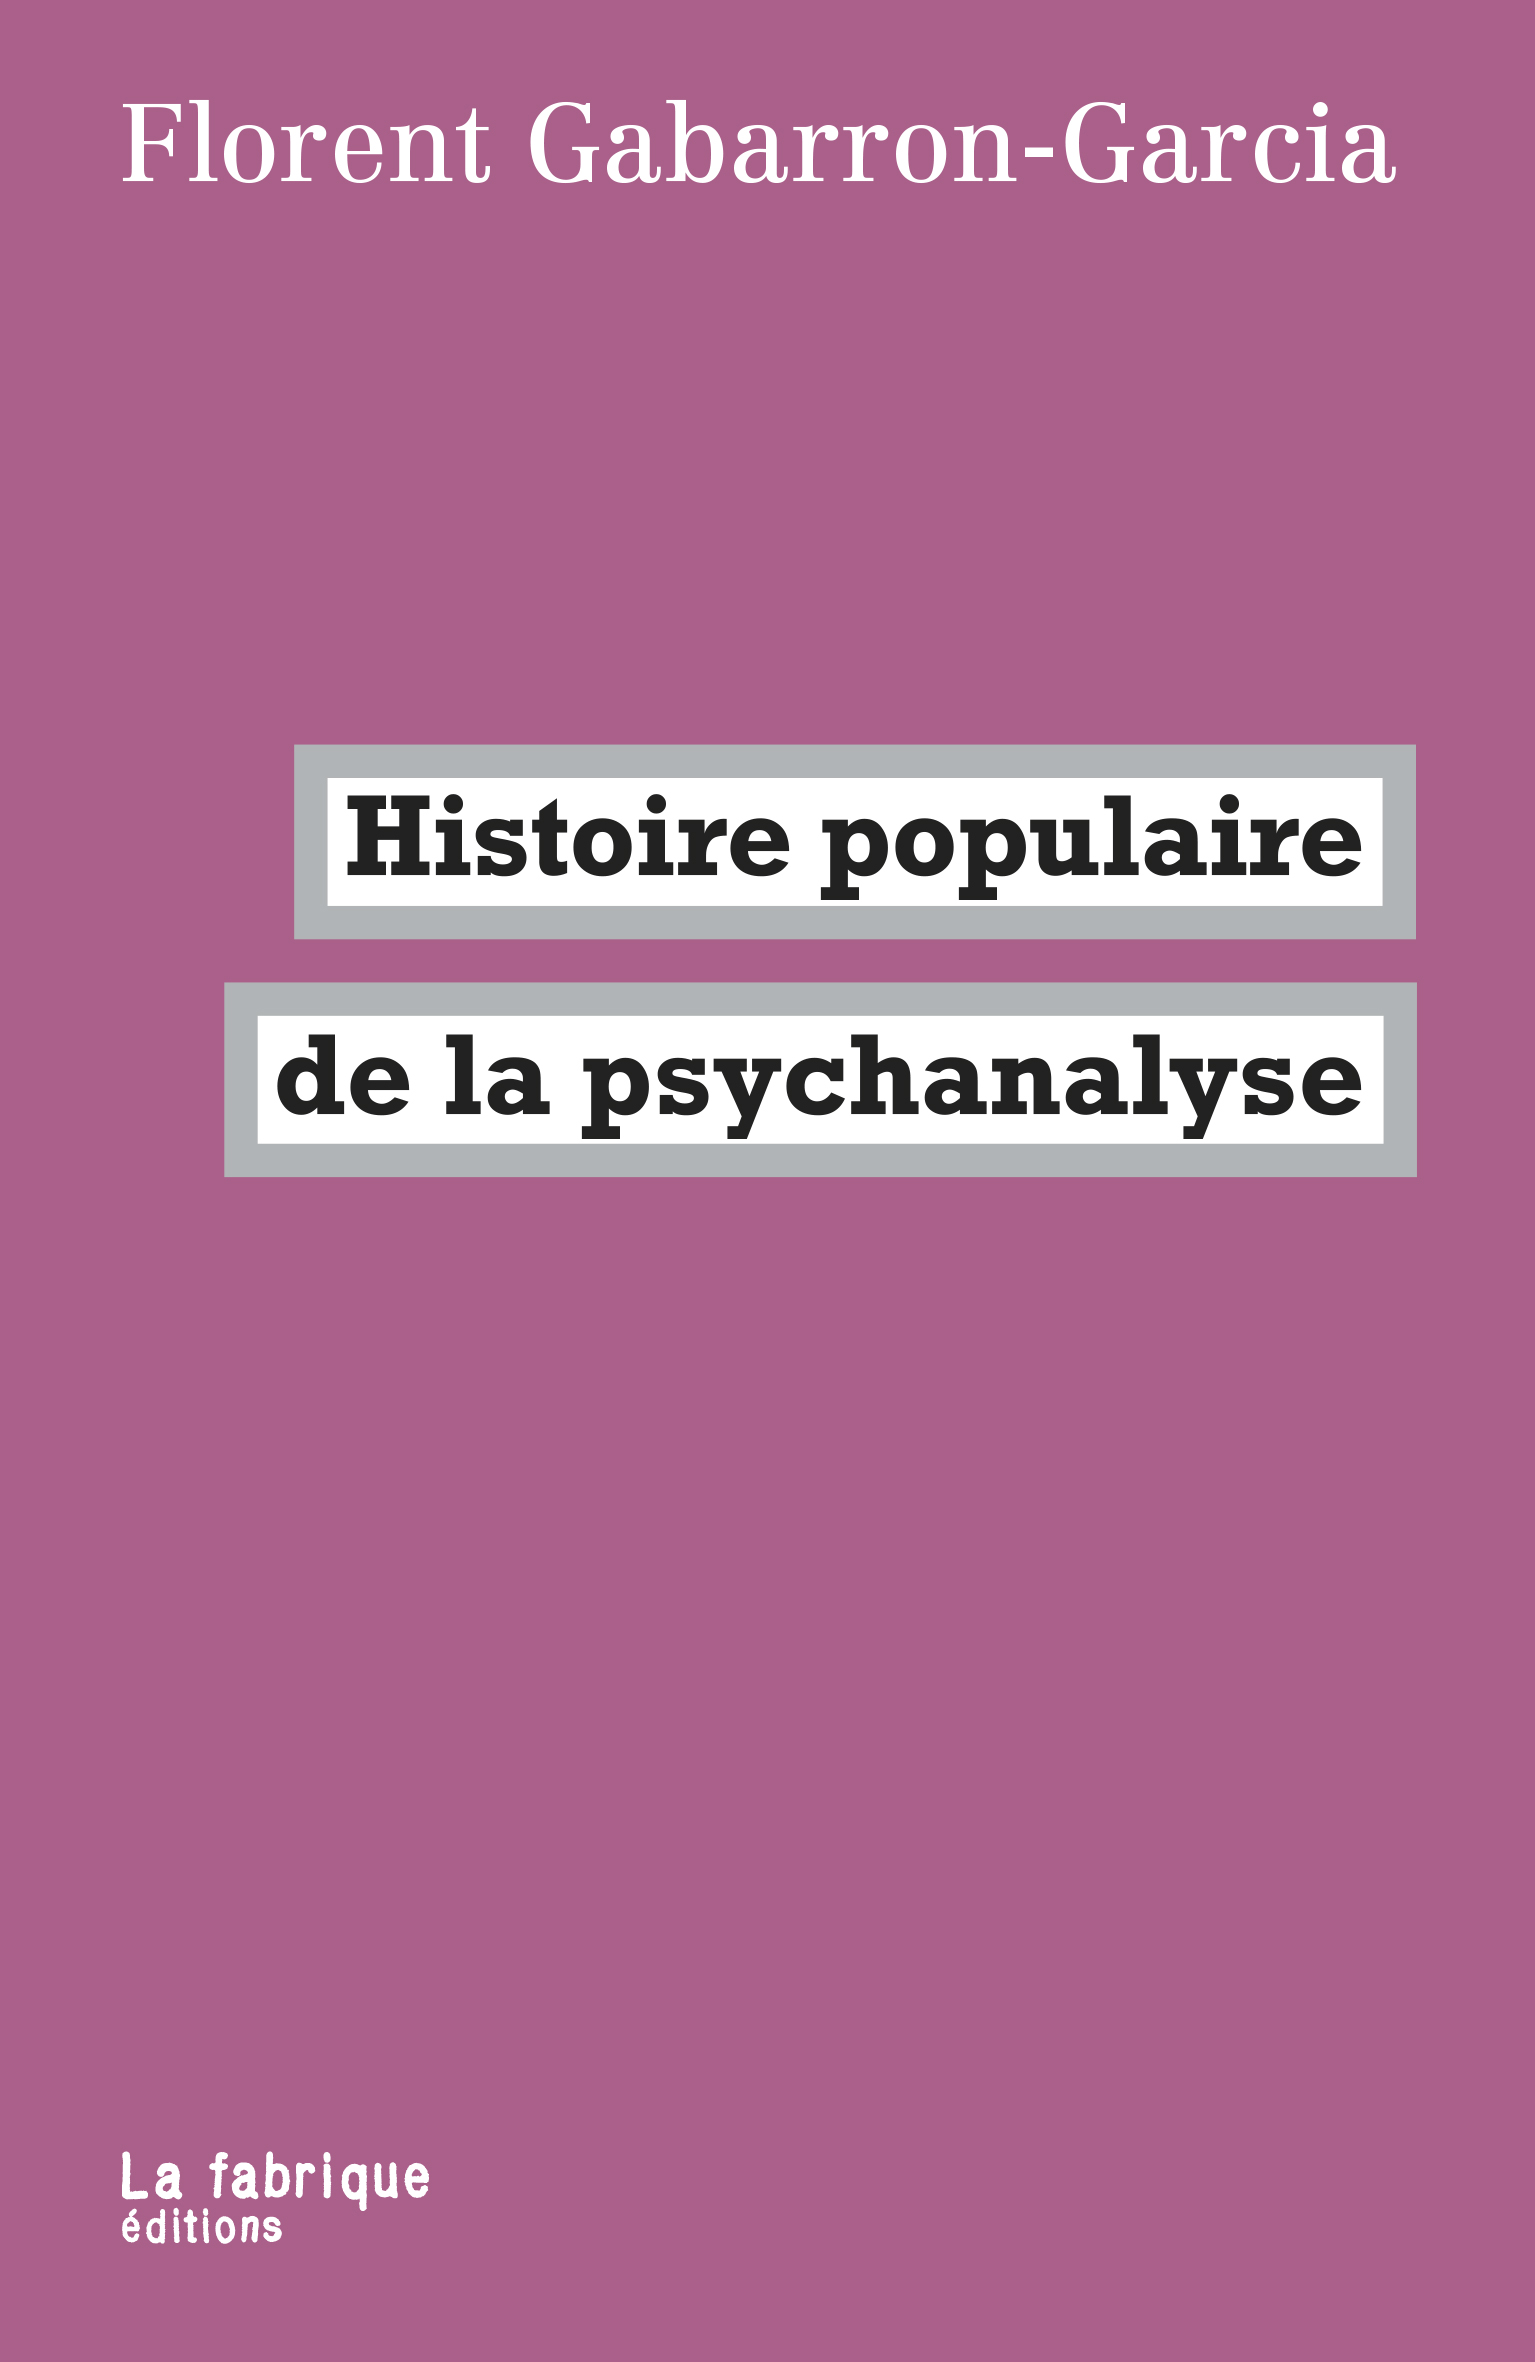 Rappel : Rencontre autour du livre Histoire populaire de la psychanalyse